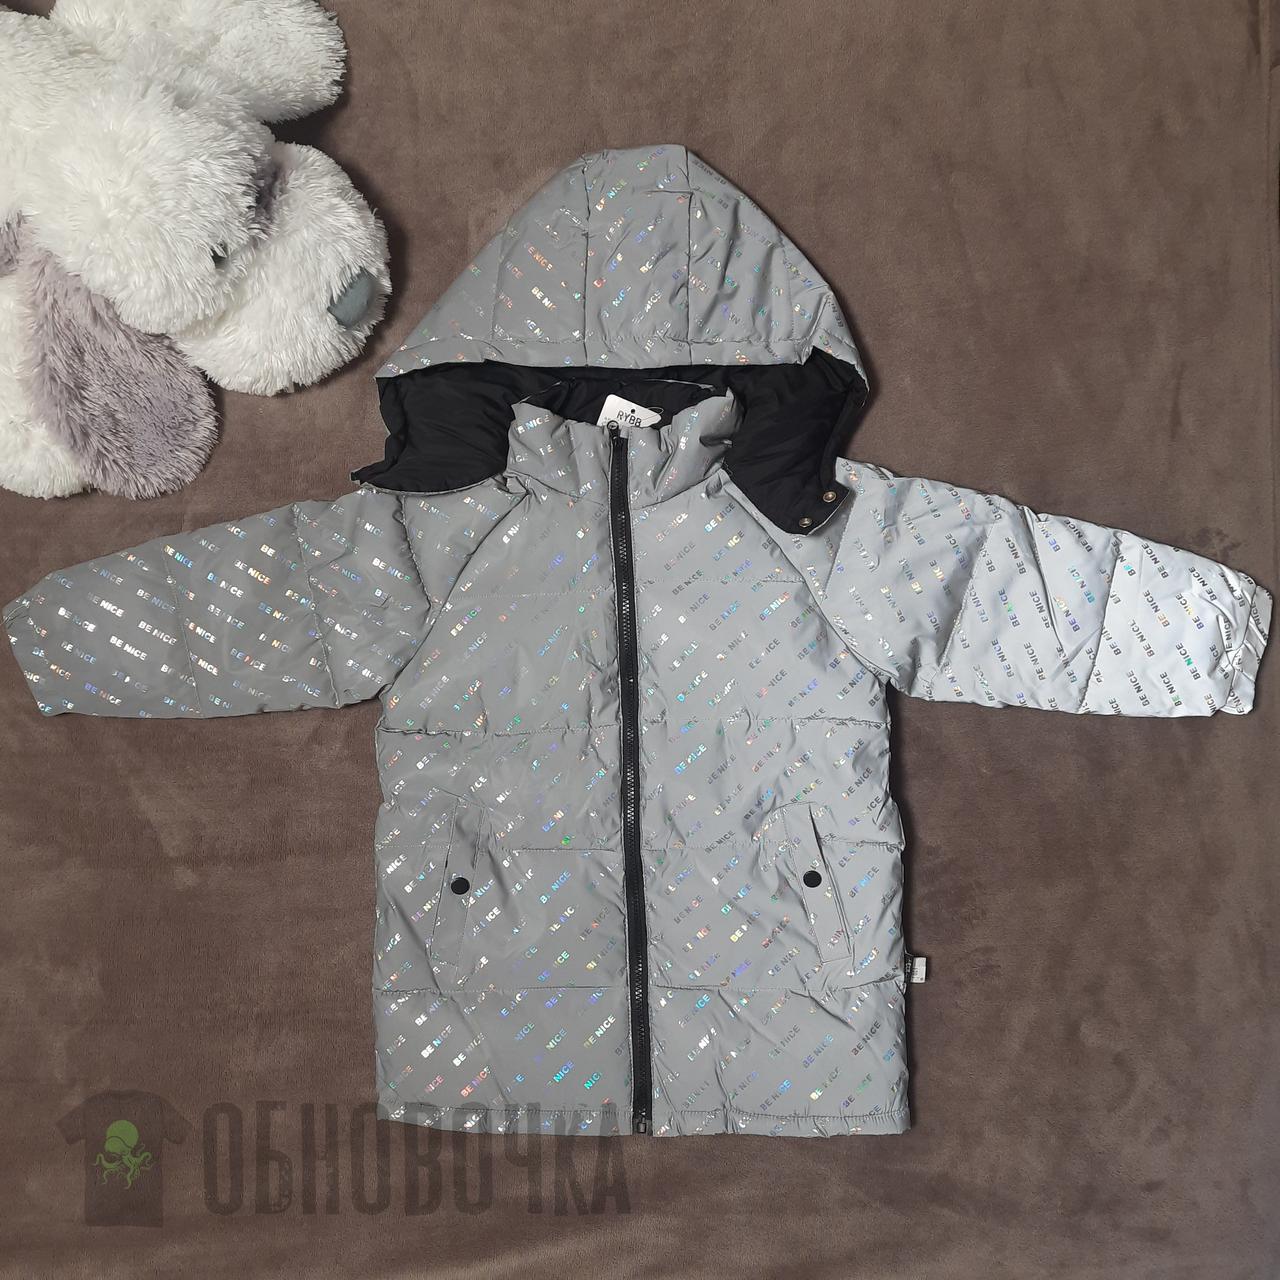 Світловідбивна куртка демісезонна дитяча на хлопчика 5-6 років, весняна тепла курточка з каптуром - весна осінь